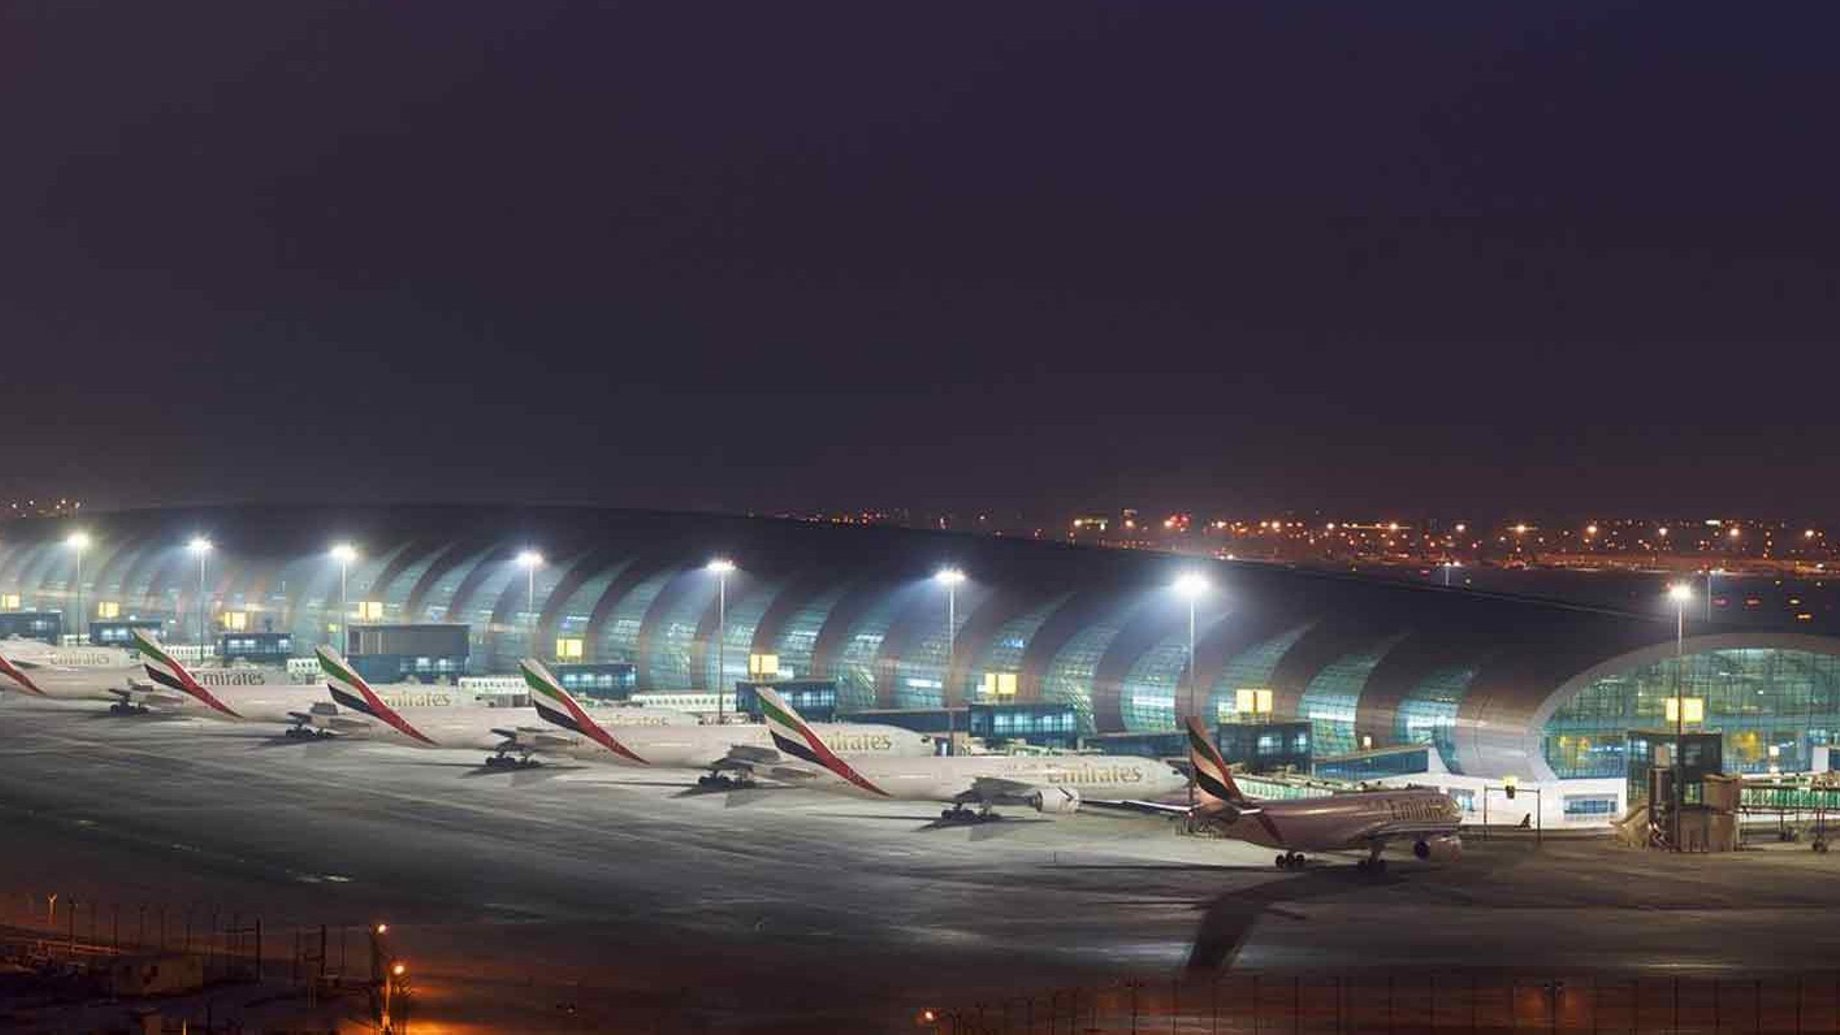 Emirates Terminal 3 at night